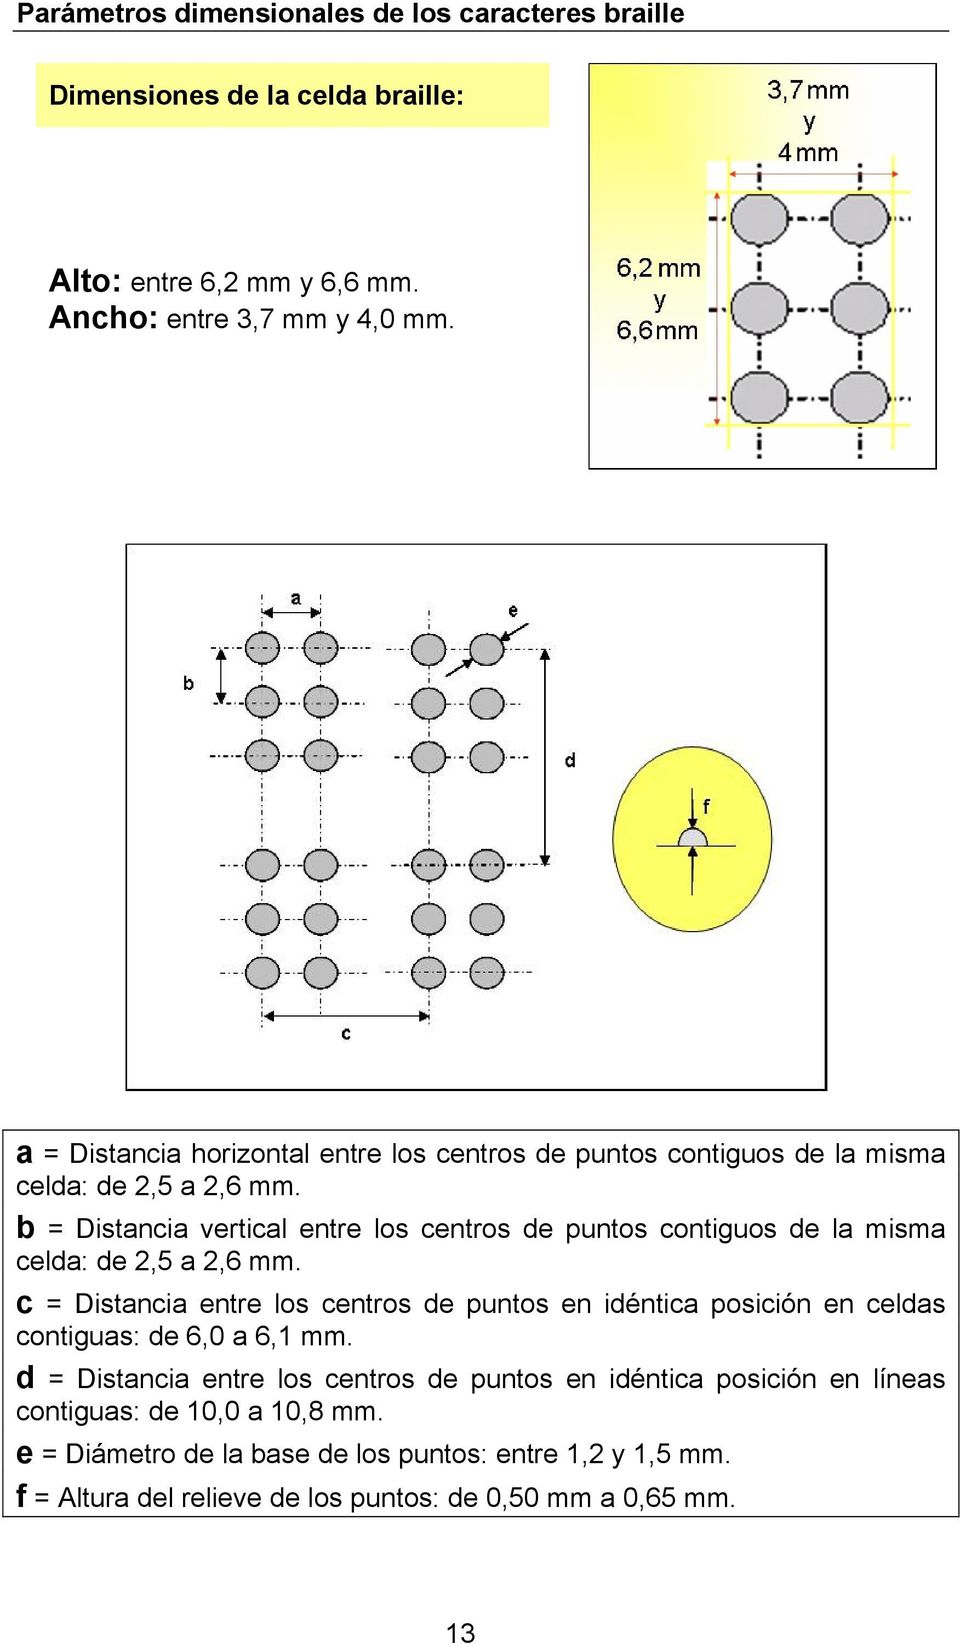 b = Distancia vertical entre los centros de puntos contiguos de la misma celda: de 2,5 a 2,6 mm.